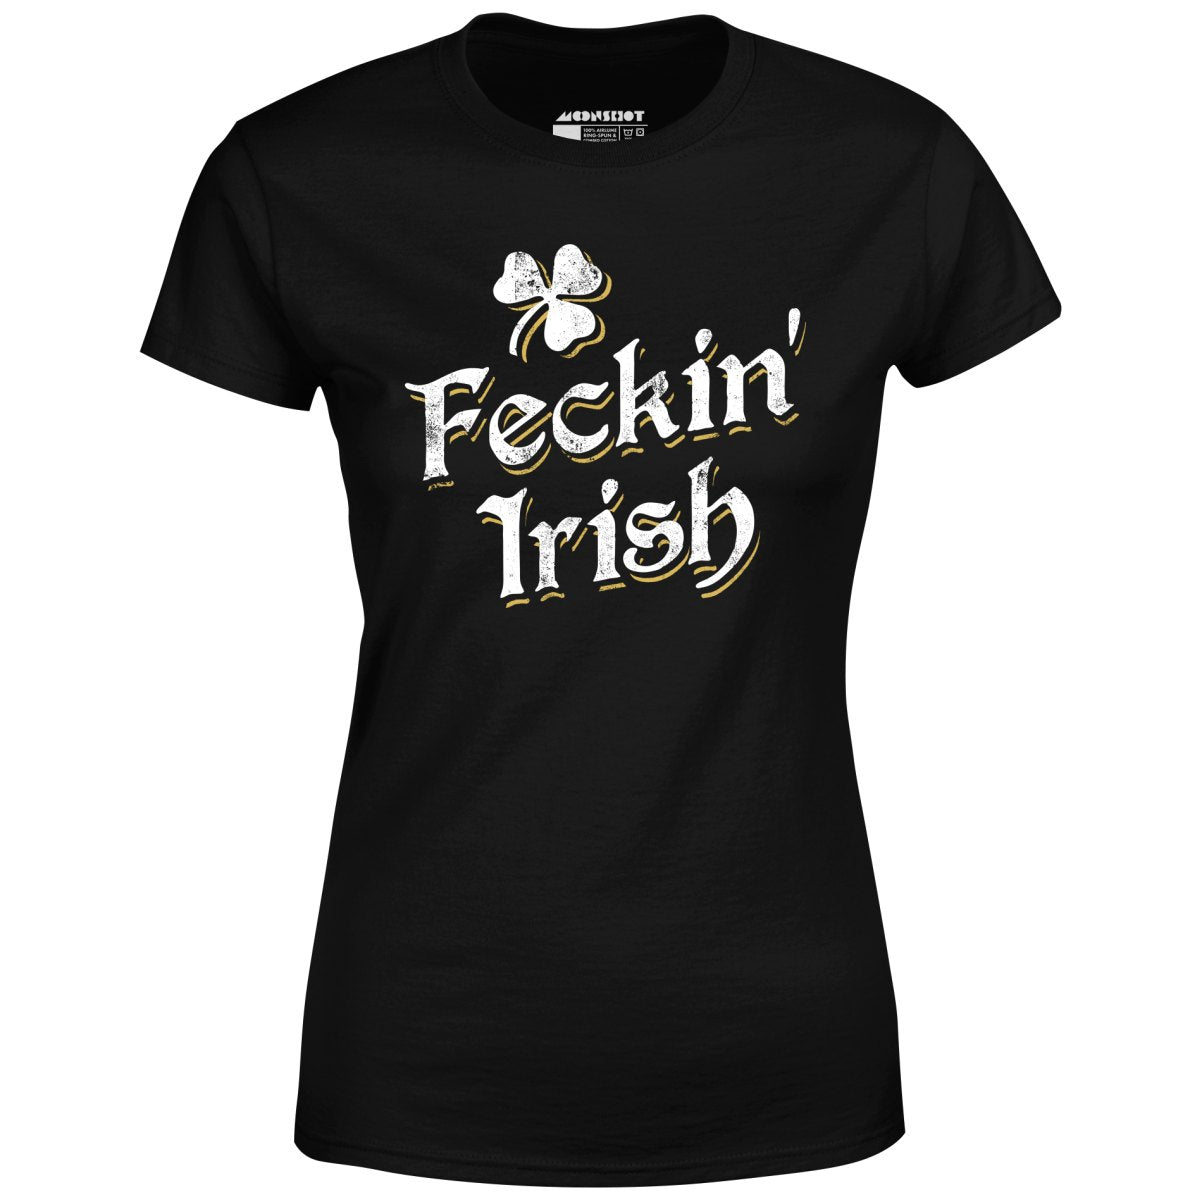 Feckin' Irish - Women's T-Shirt